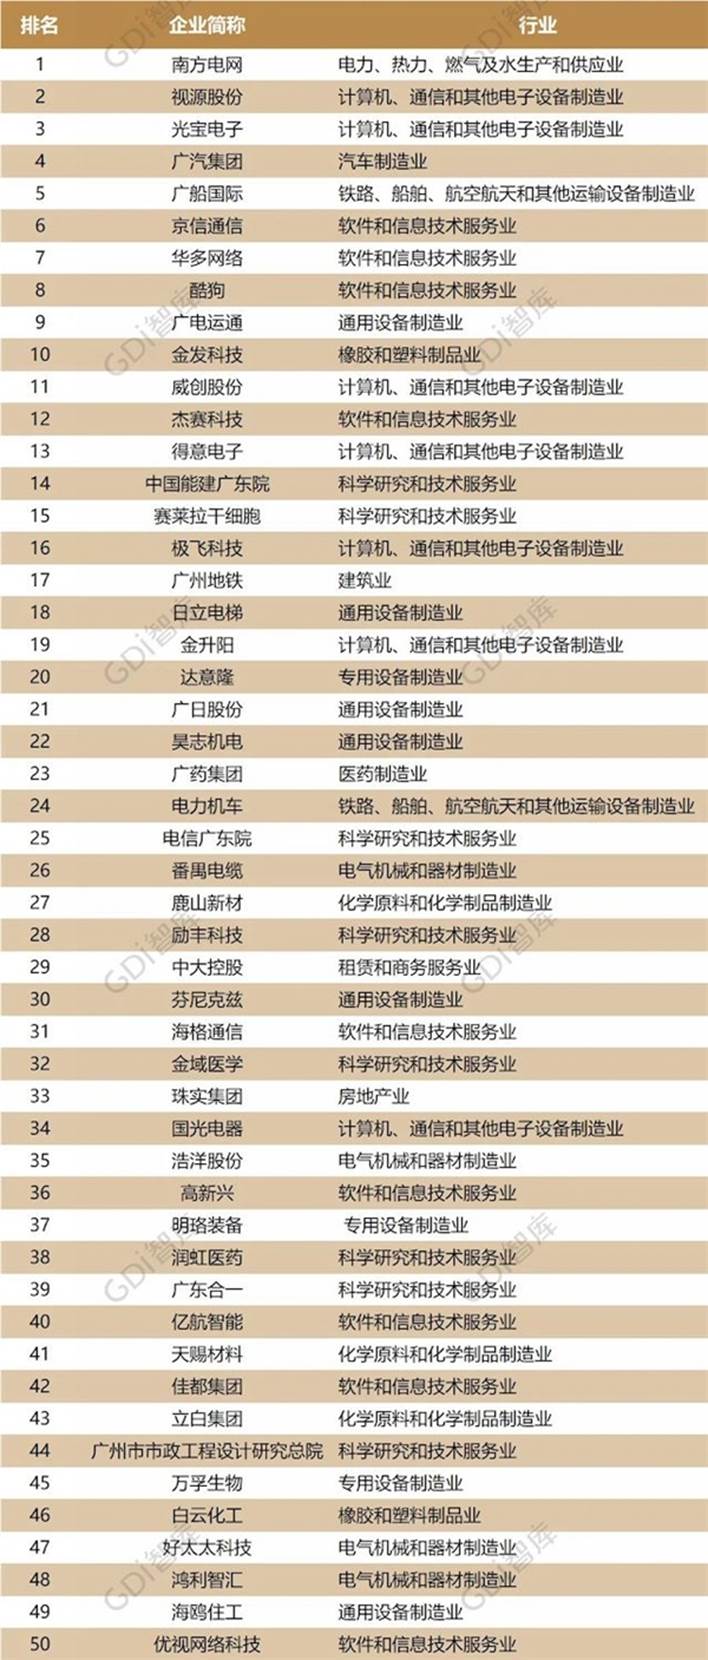 广州企业创新50强榜发布,希沃母公司视源股份位列民营企业第一